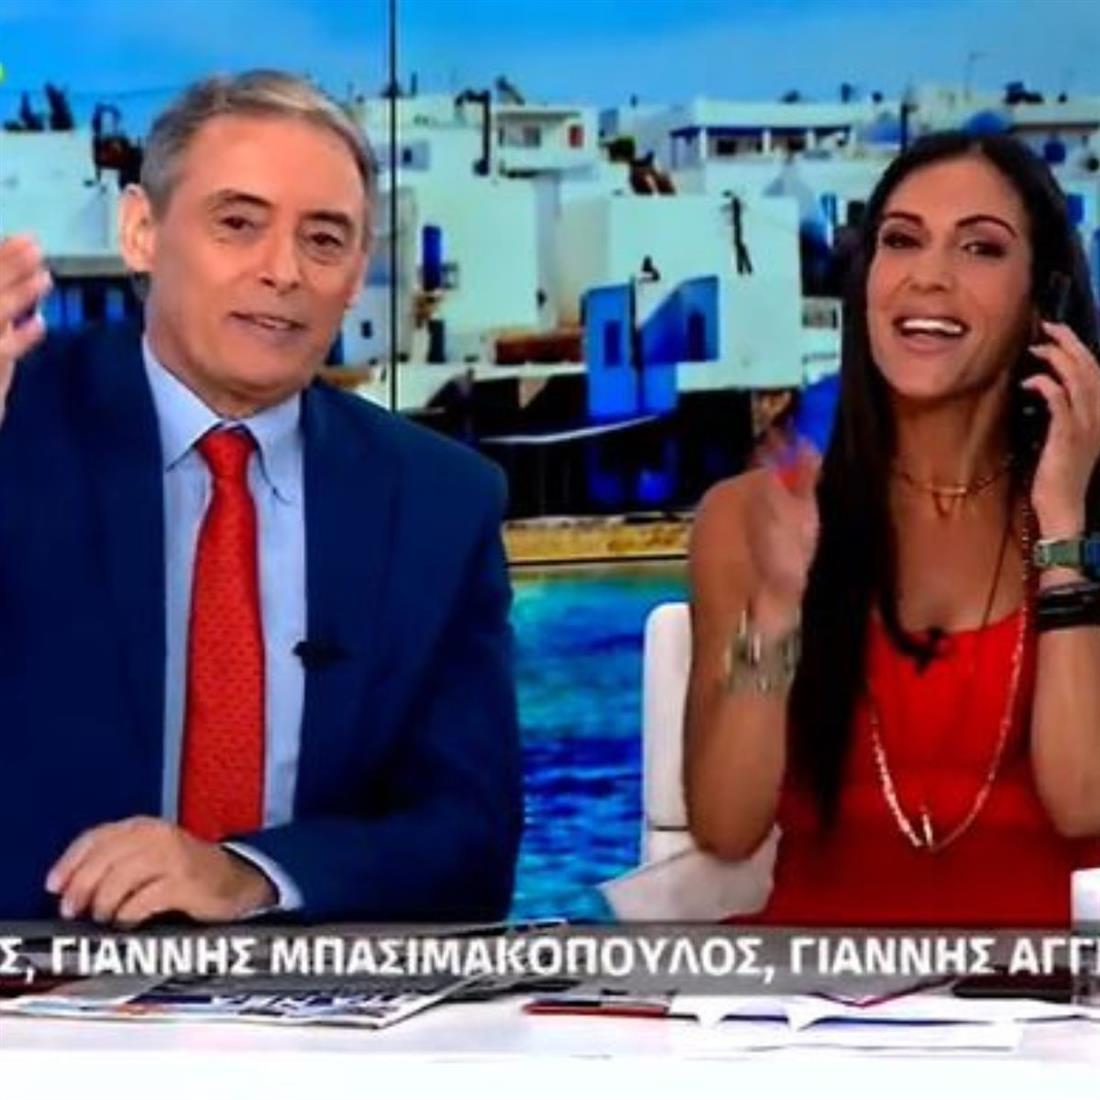 Ανθή Βούλγαρη: To on air τηλεφώνημα που δέχθηκε από την Δανάη Μπάρκα - "Όχι δεν έχεις εκπομπή"